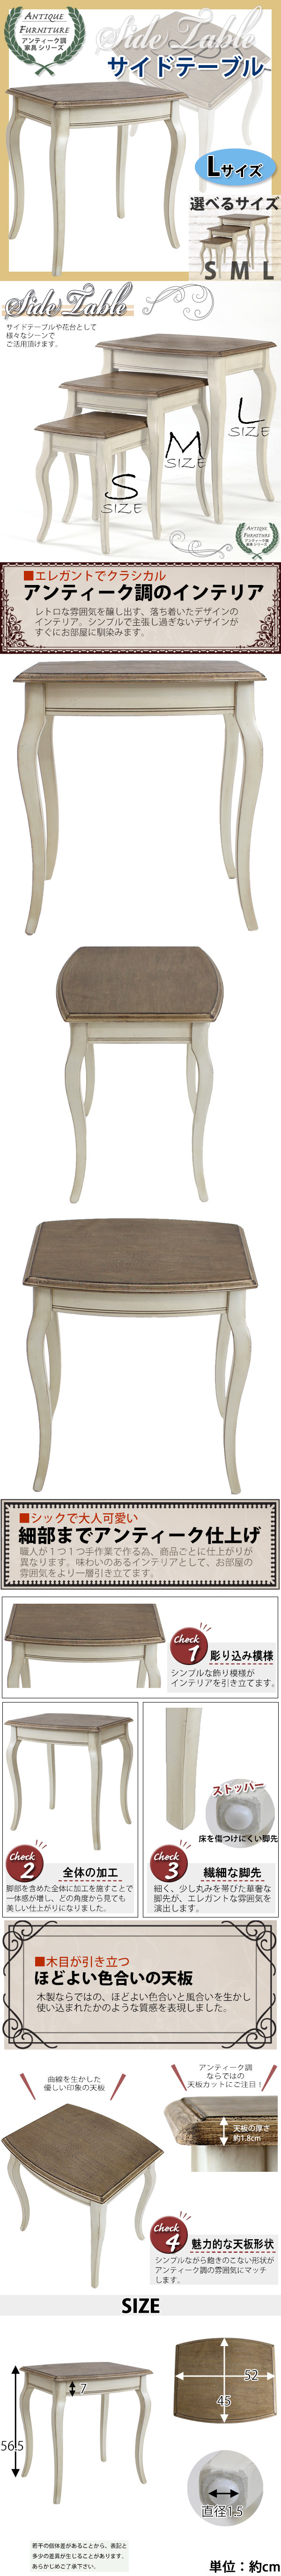 直販正規アンティーク調 サイドテーブル Lサイズ 木製 白 花台 テーブル サイドテーブル